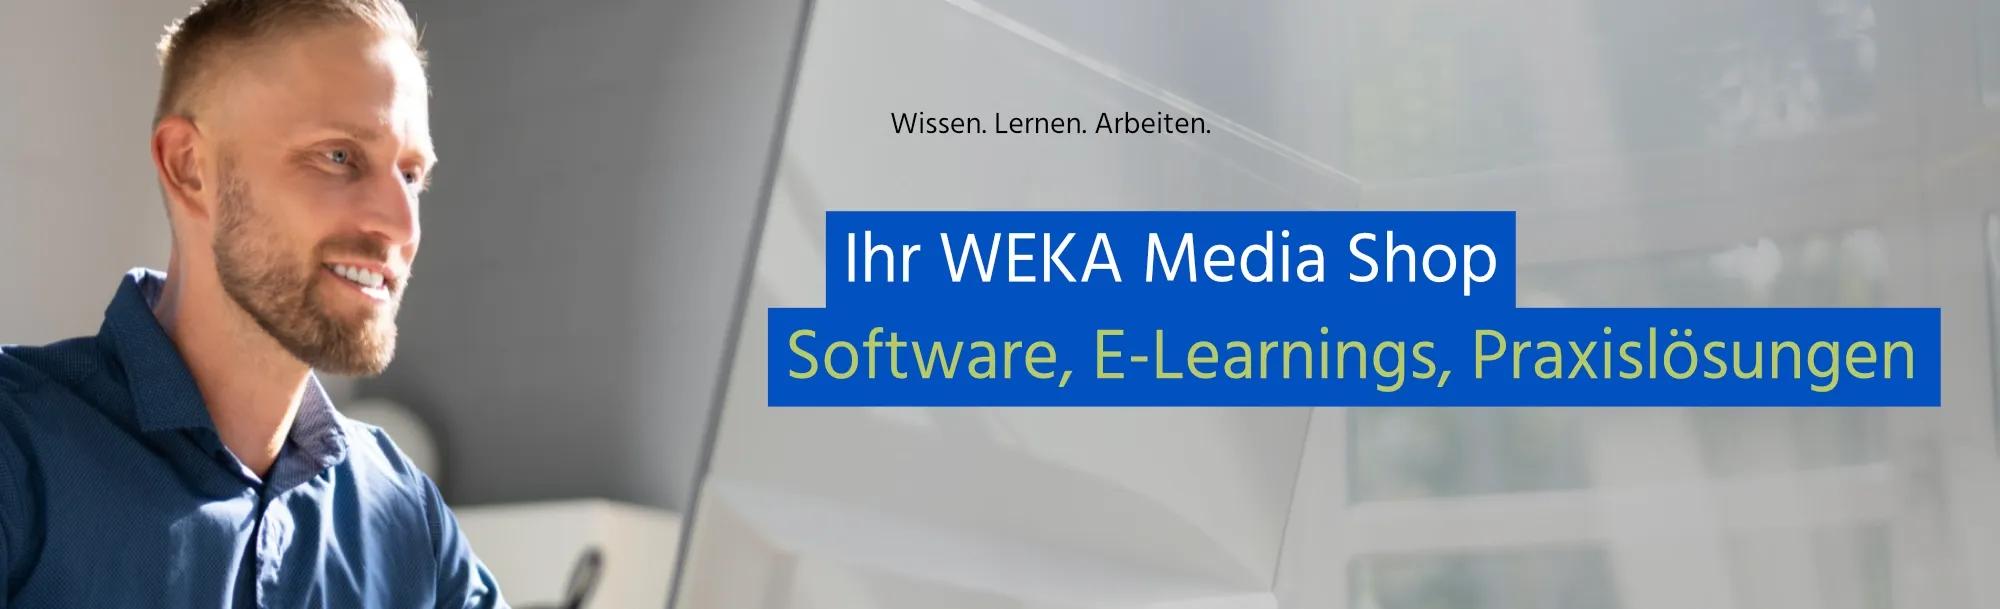 WEKA Media Online-Shop: Onlinelösungen, Software, Fachbücher, Fachinformationen, multimedial vernetzte Angebote und Dienstleistungen, Fachinformationslösungen für Firmen.